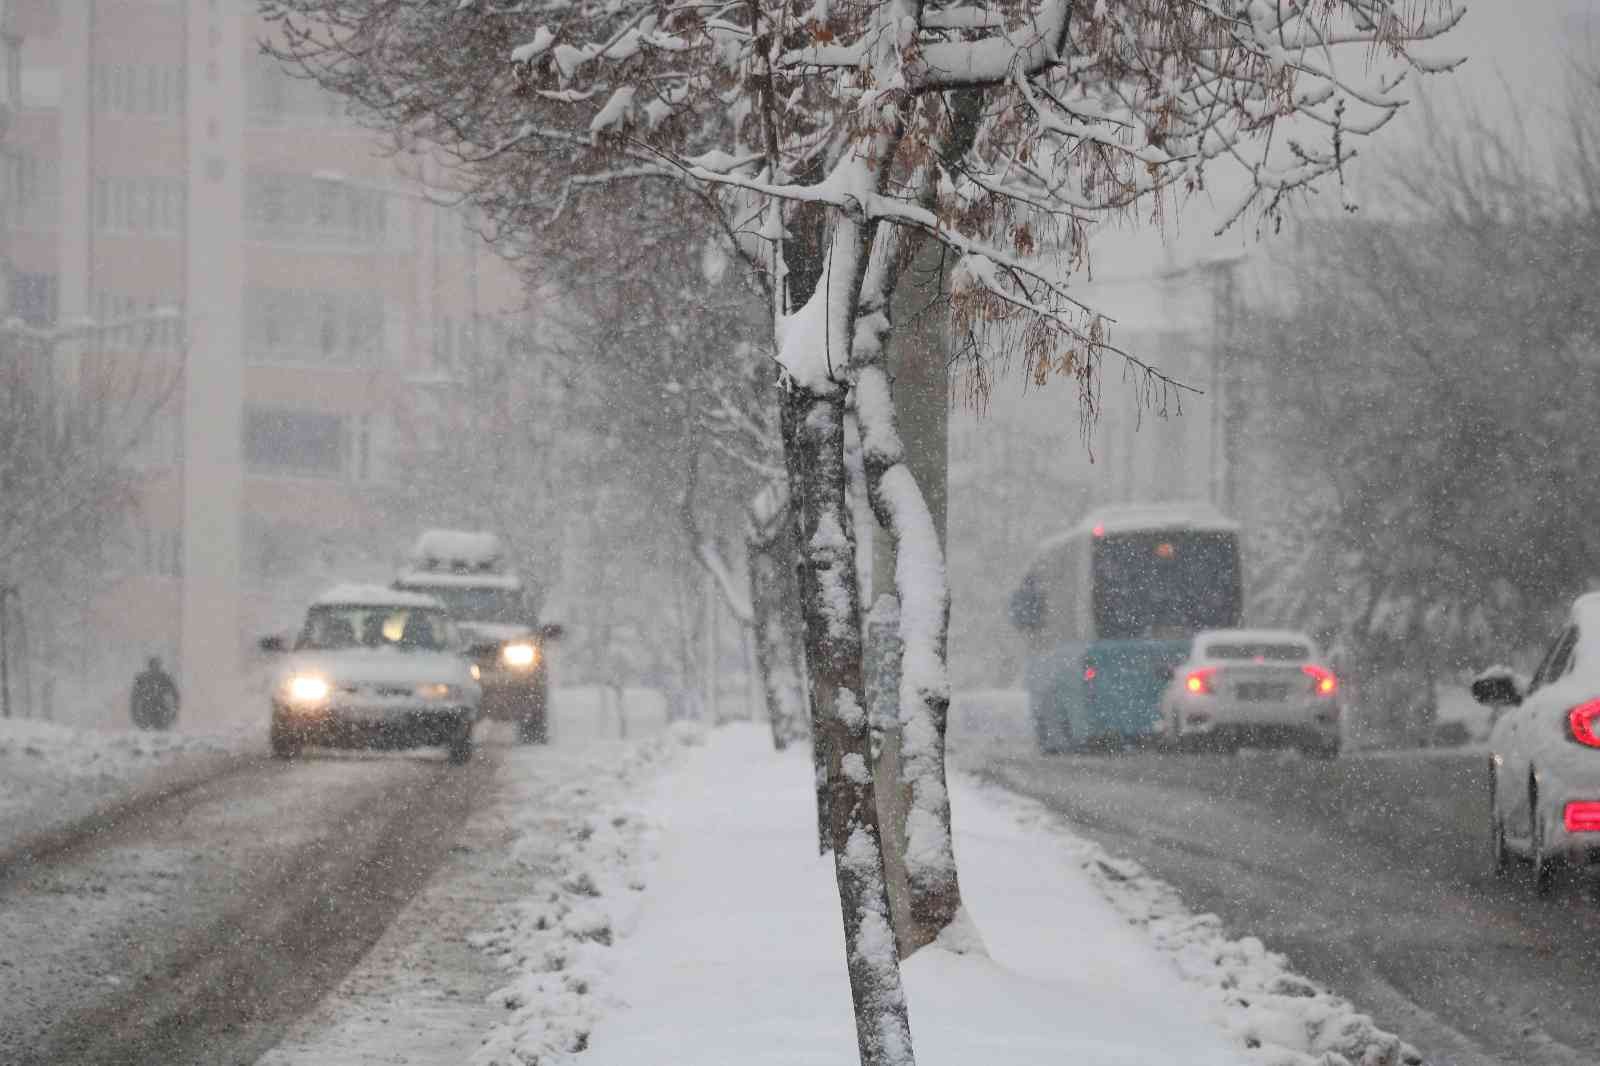 Kahramanmaraş’ta kar manzaraları #kahramanmaras